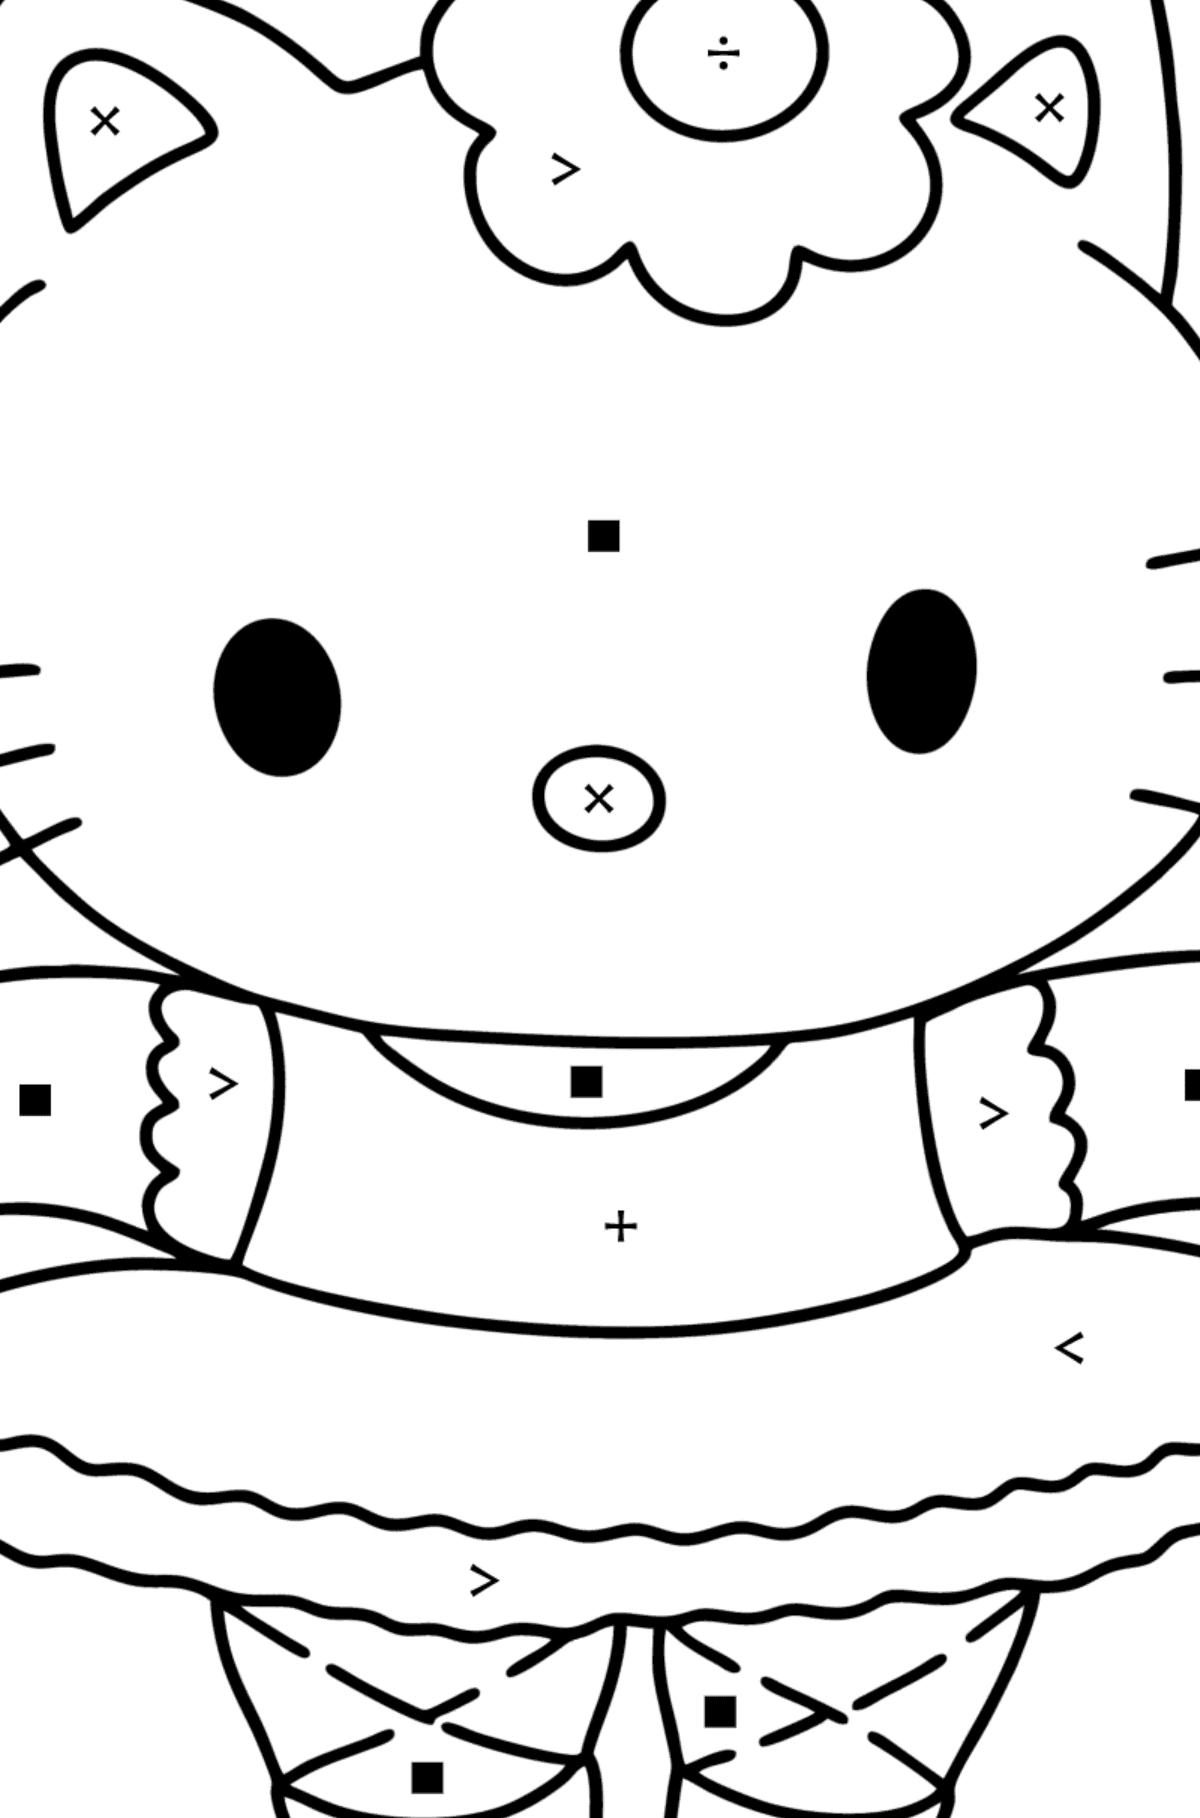 Boyama sayfası Hello Kitty balerin - Sembollerle Boyama çocuklar için